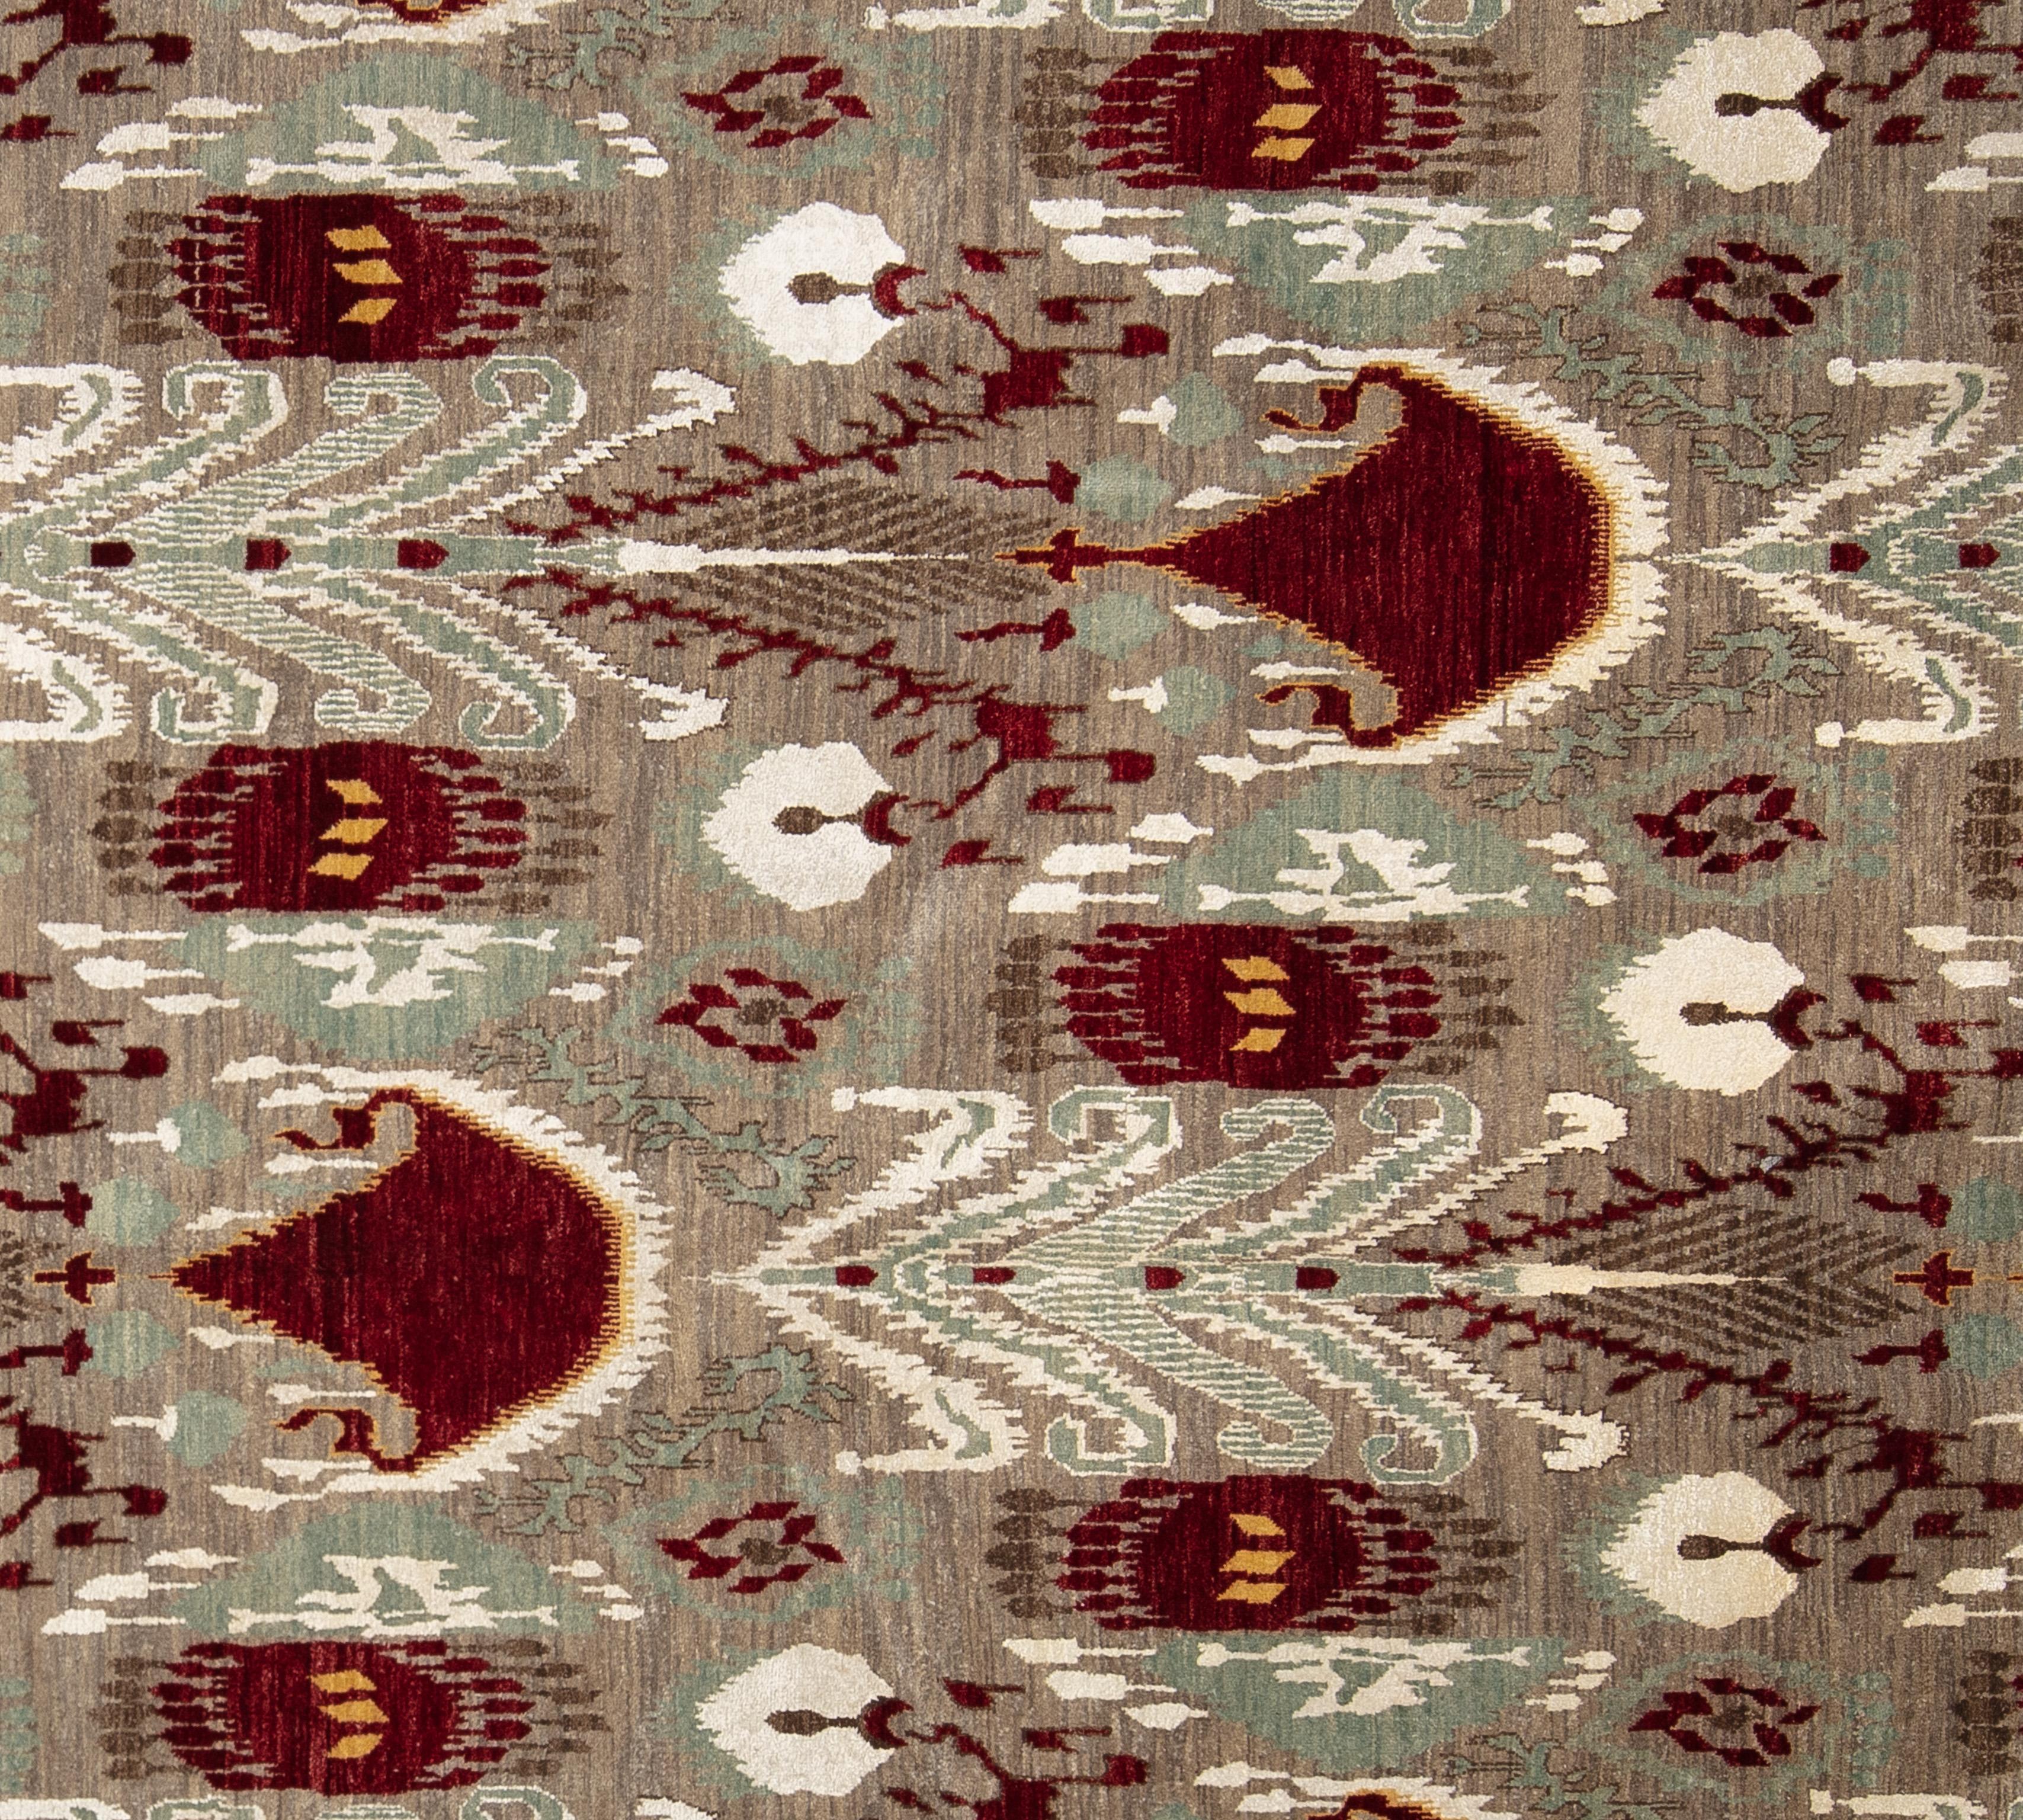 Tissé à la main en Inde et composé à 100 % de laine, ce tapis amusant, moderne et sophistiqué présente une palette de couleurs vives. Doté d'un champ abrash taupe et gris et d'un motif captivant en all over cranberry, seafoam et ivory, ce tapis